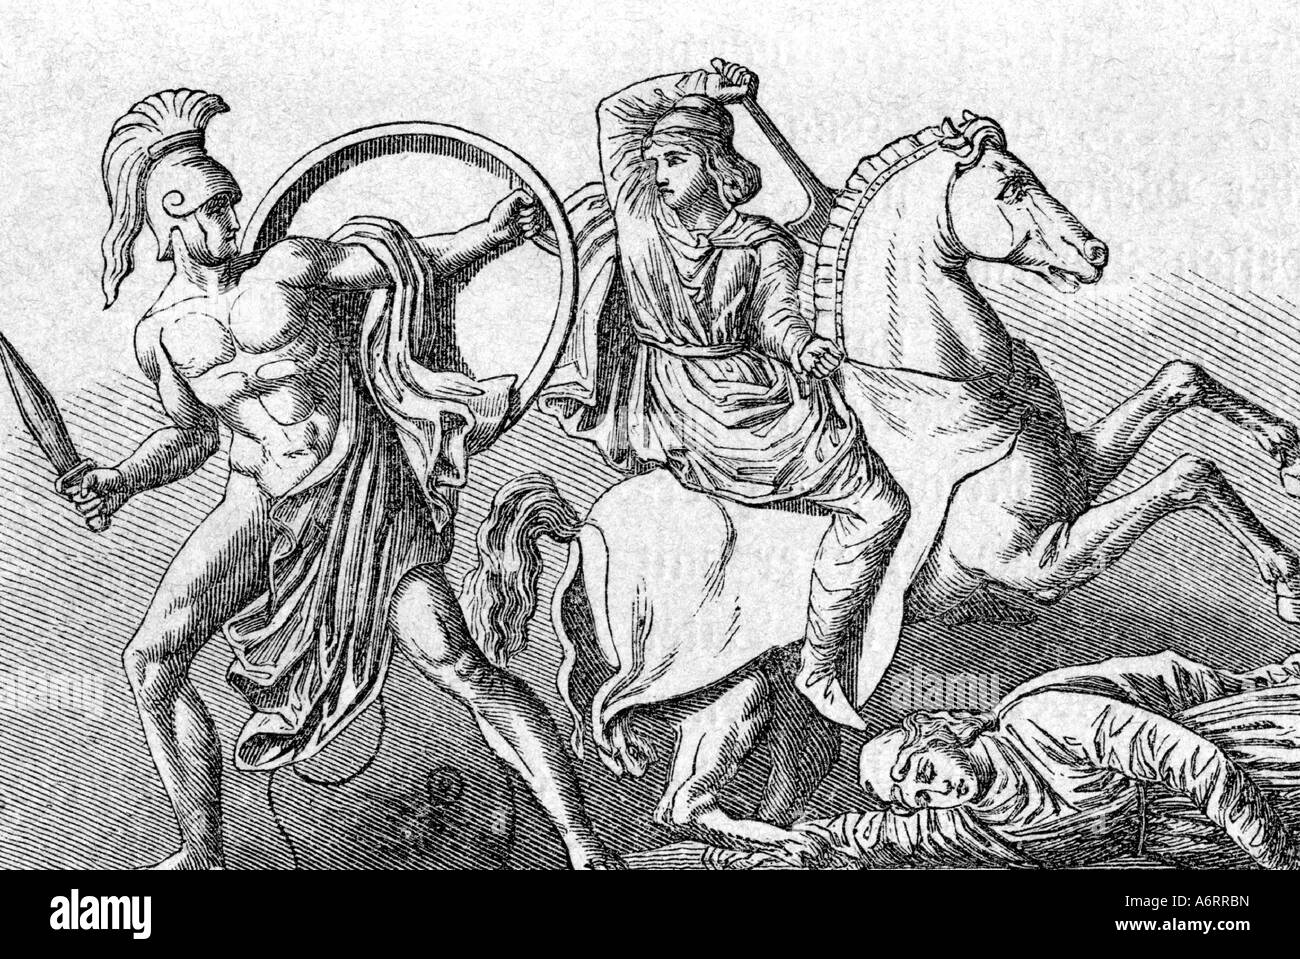 Figures mythologiques grecques amazones Amazon le combat à la 19e siècle gravure guerrier grec ancien monde femme mythol Banque D'Images